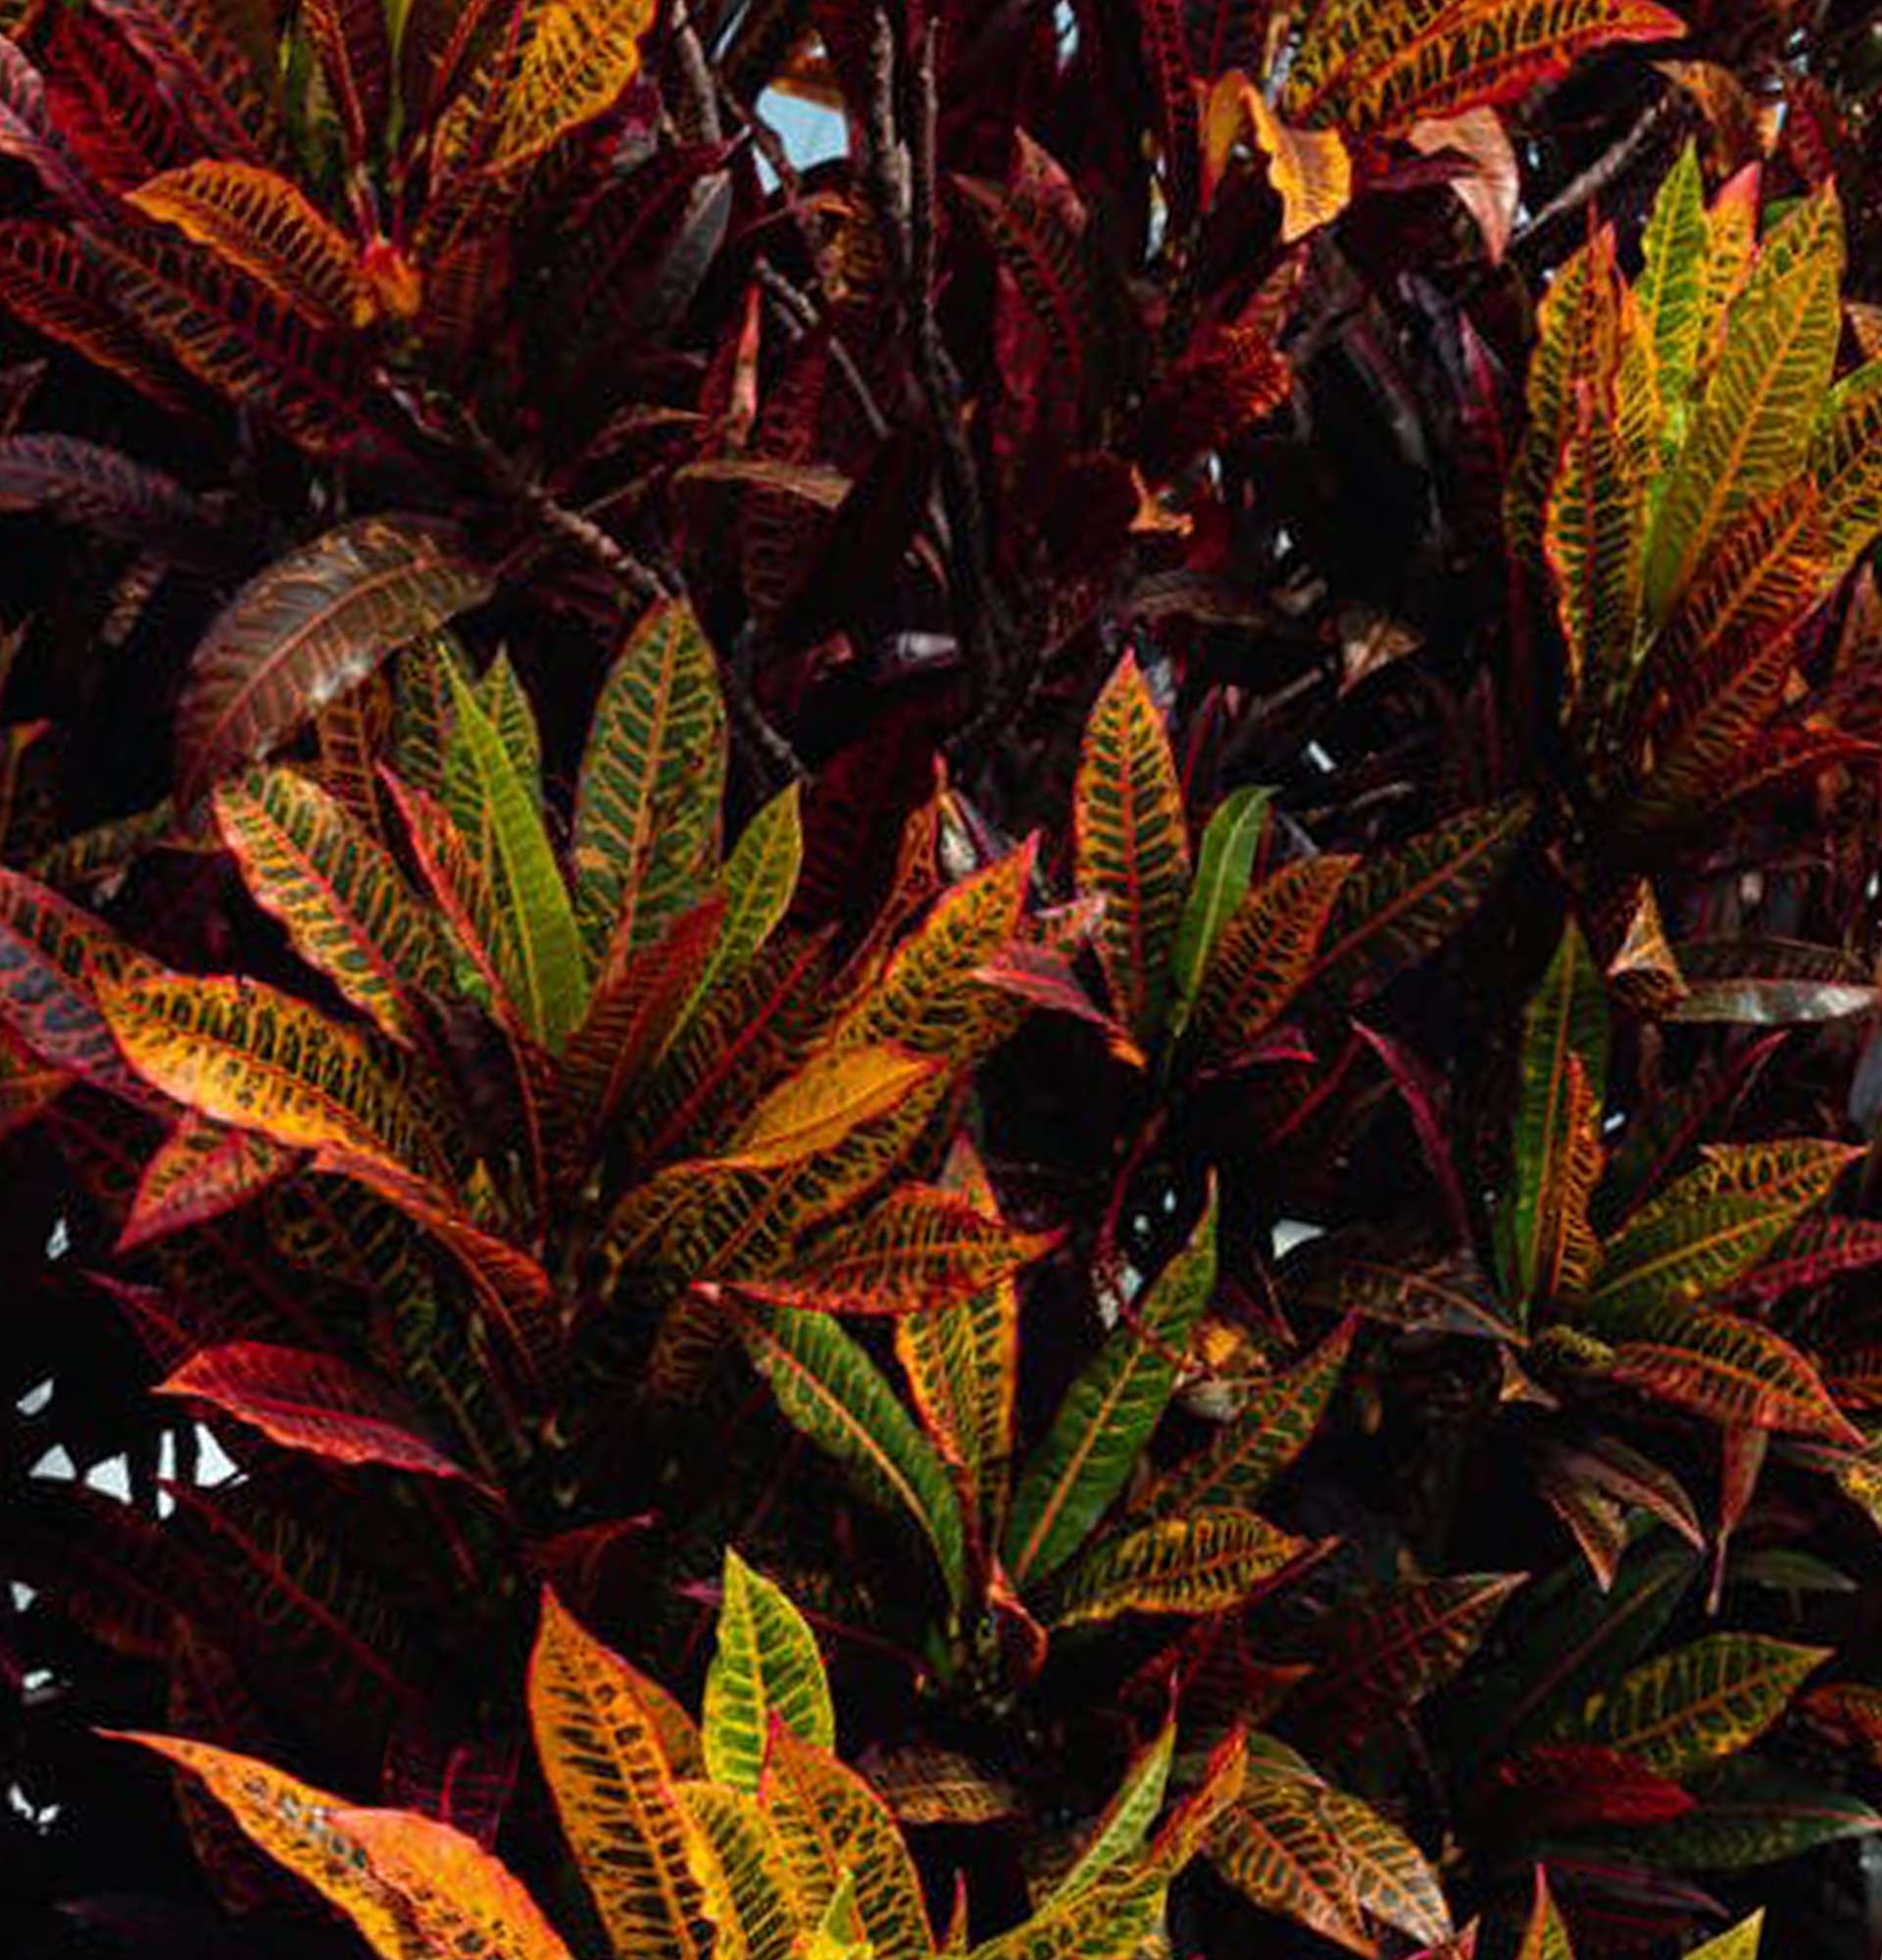  растение с зелено красными листьями фото - кротон